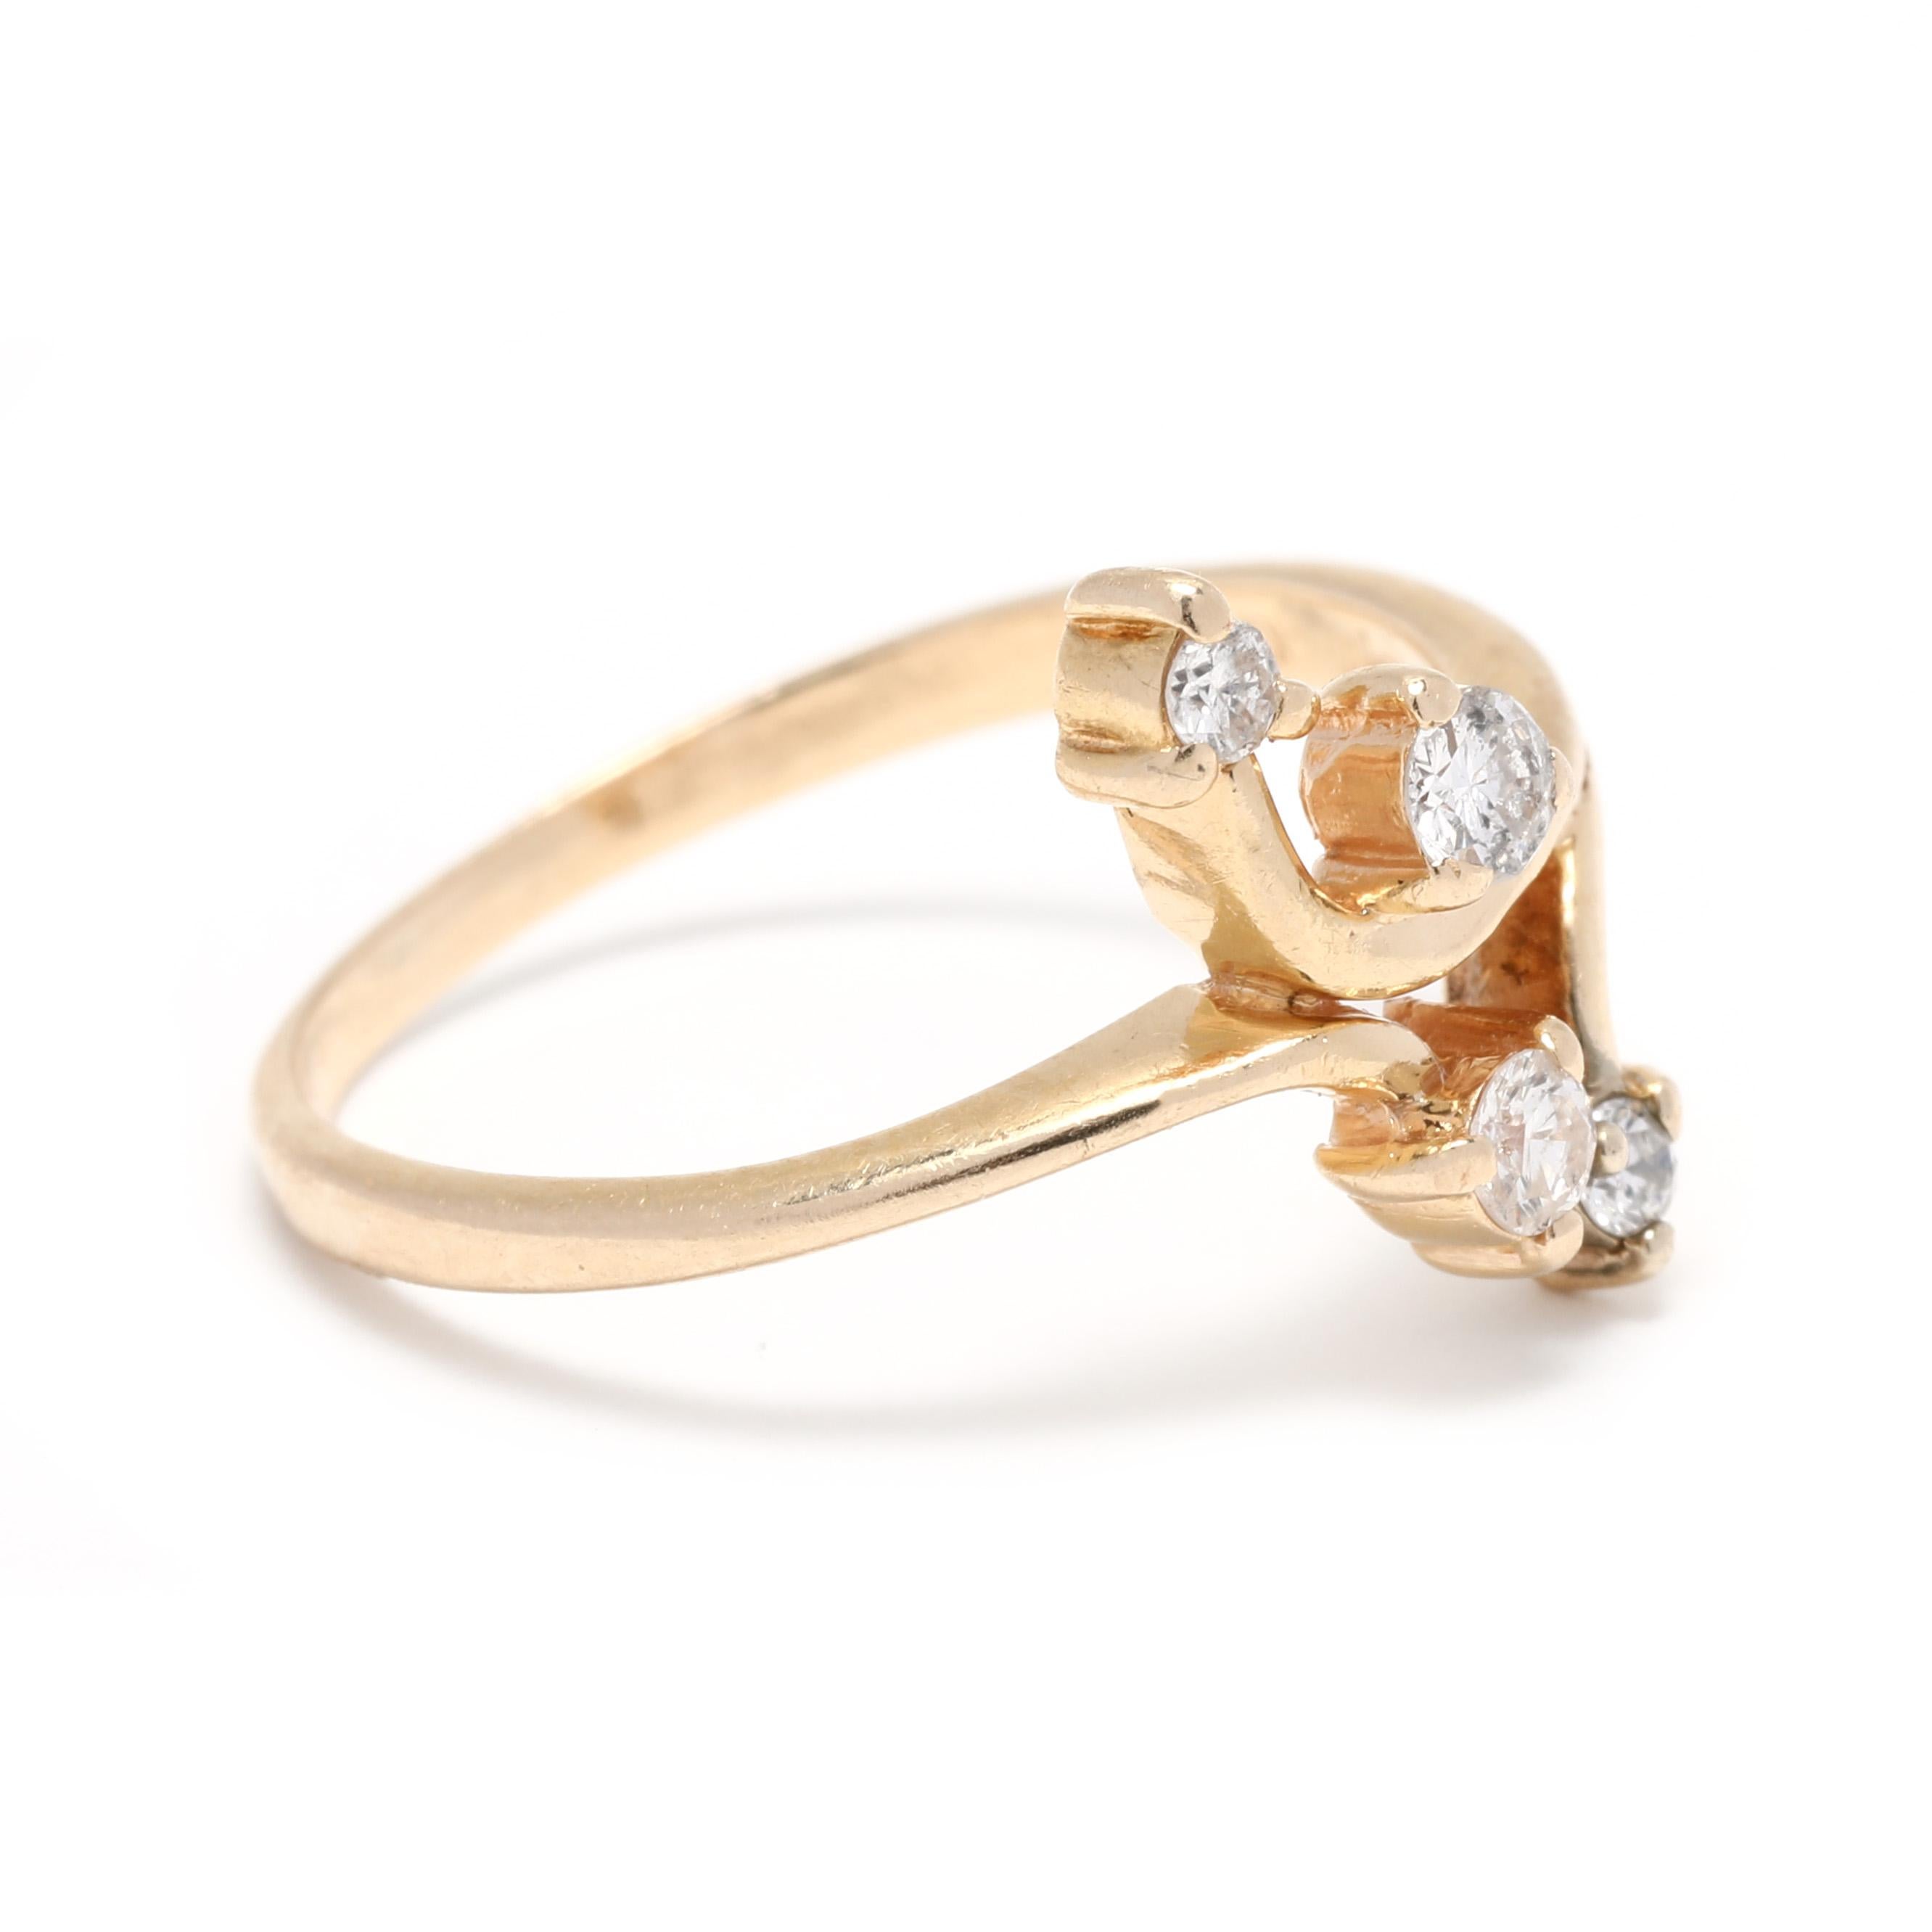 Diese atemberaubende 0,20ctw Diamant Bypass-Ring ist in 14K Gelbgold gefertigt und ist eine Größe 6,75. Perfekt für einen besonderen Anlass ist dieser Diamant-Cluster-Ring im Crossover-Design mit runden Brillanten in einer Zackenfassung. Sein